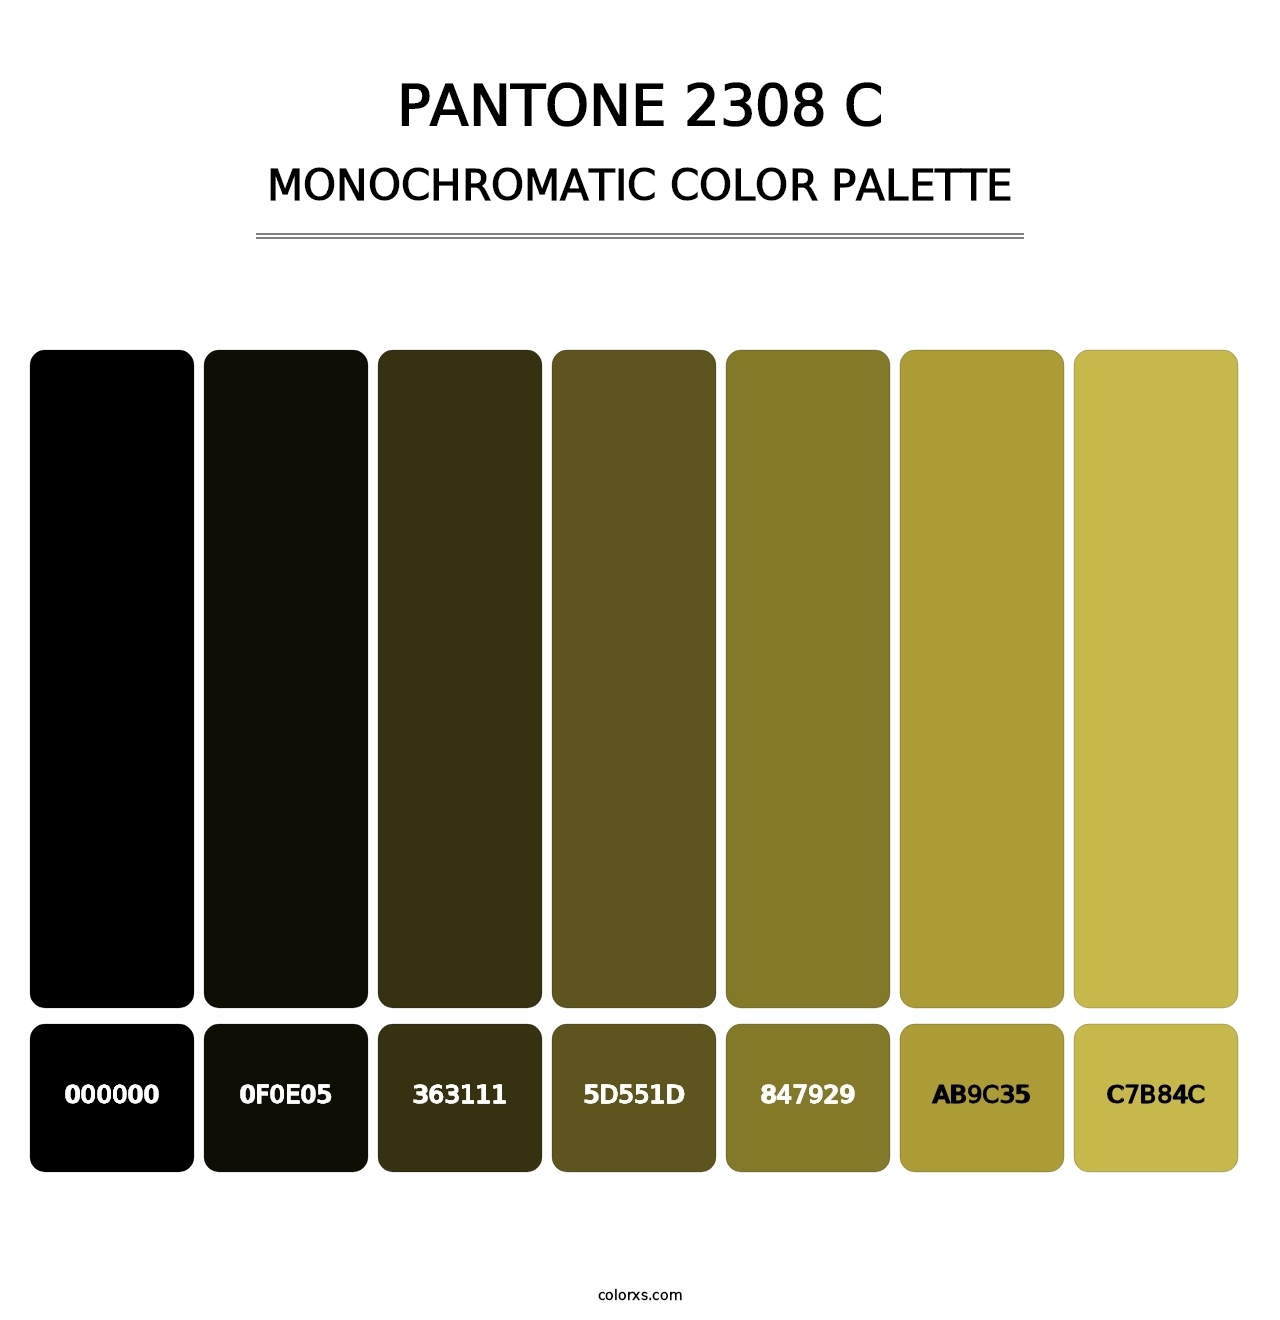 PANTONE 2308 C - Monochromatic Color Palette